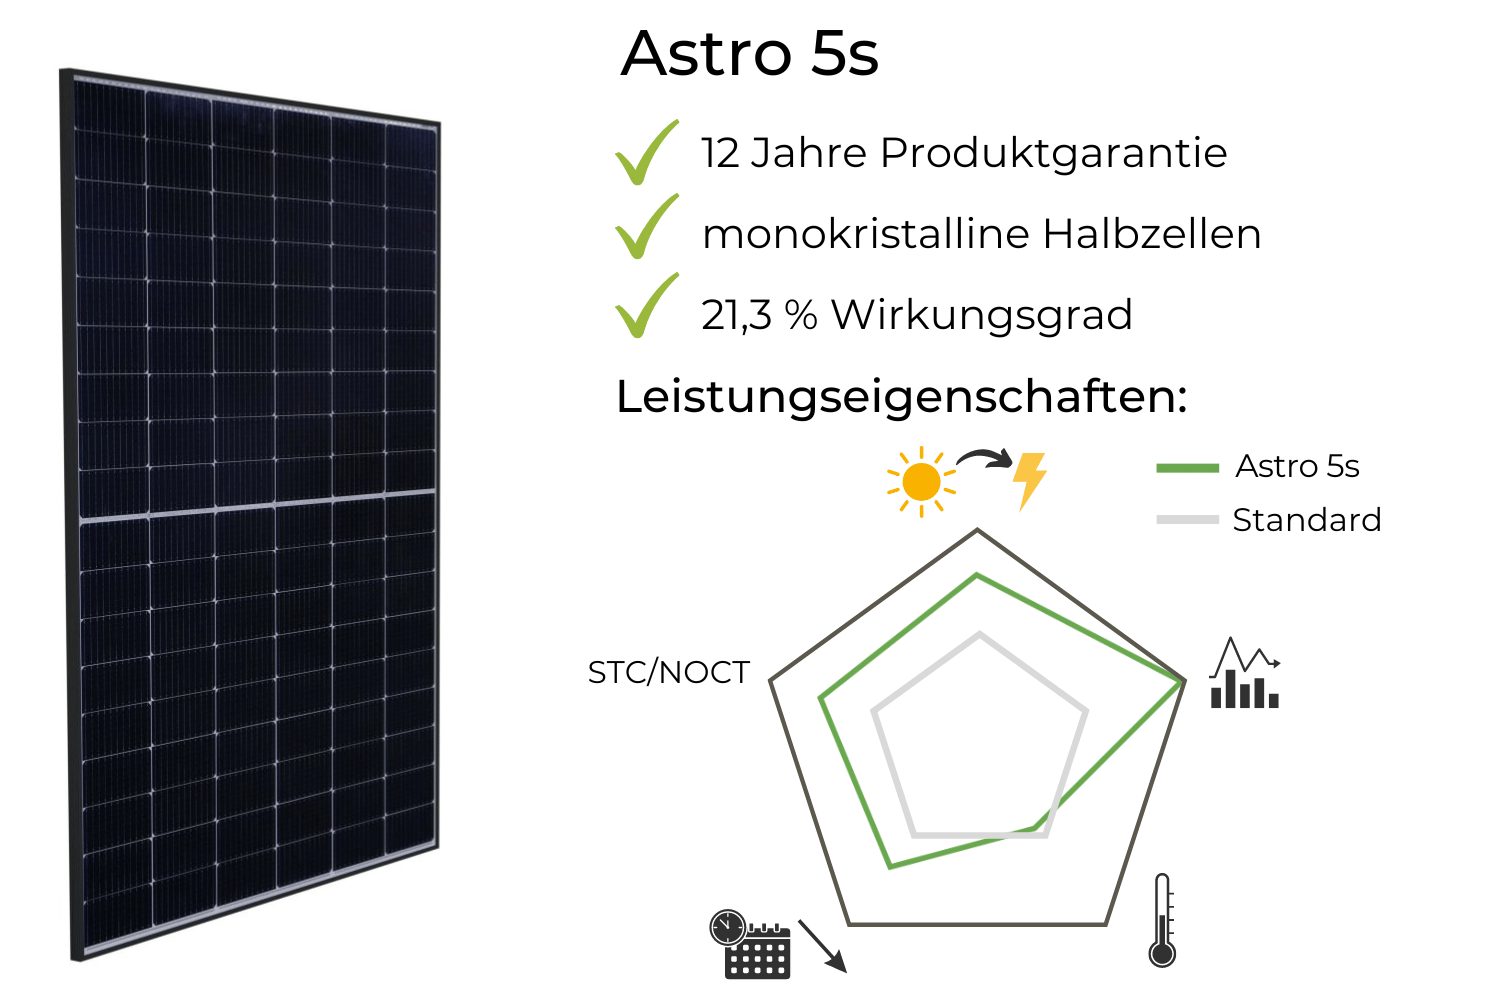 Astronergy Astro 5s